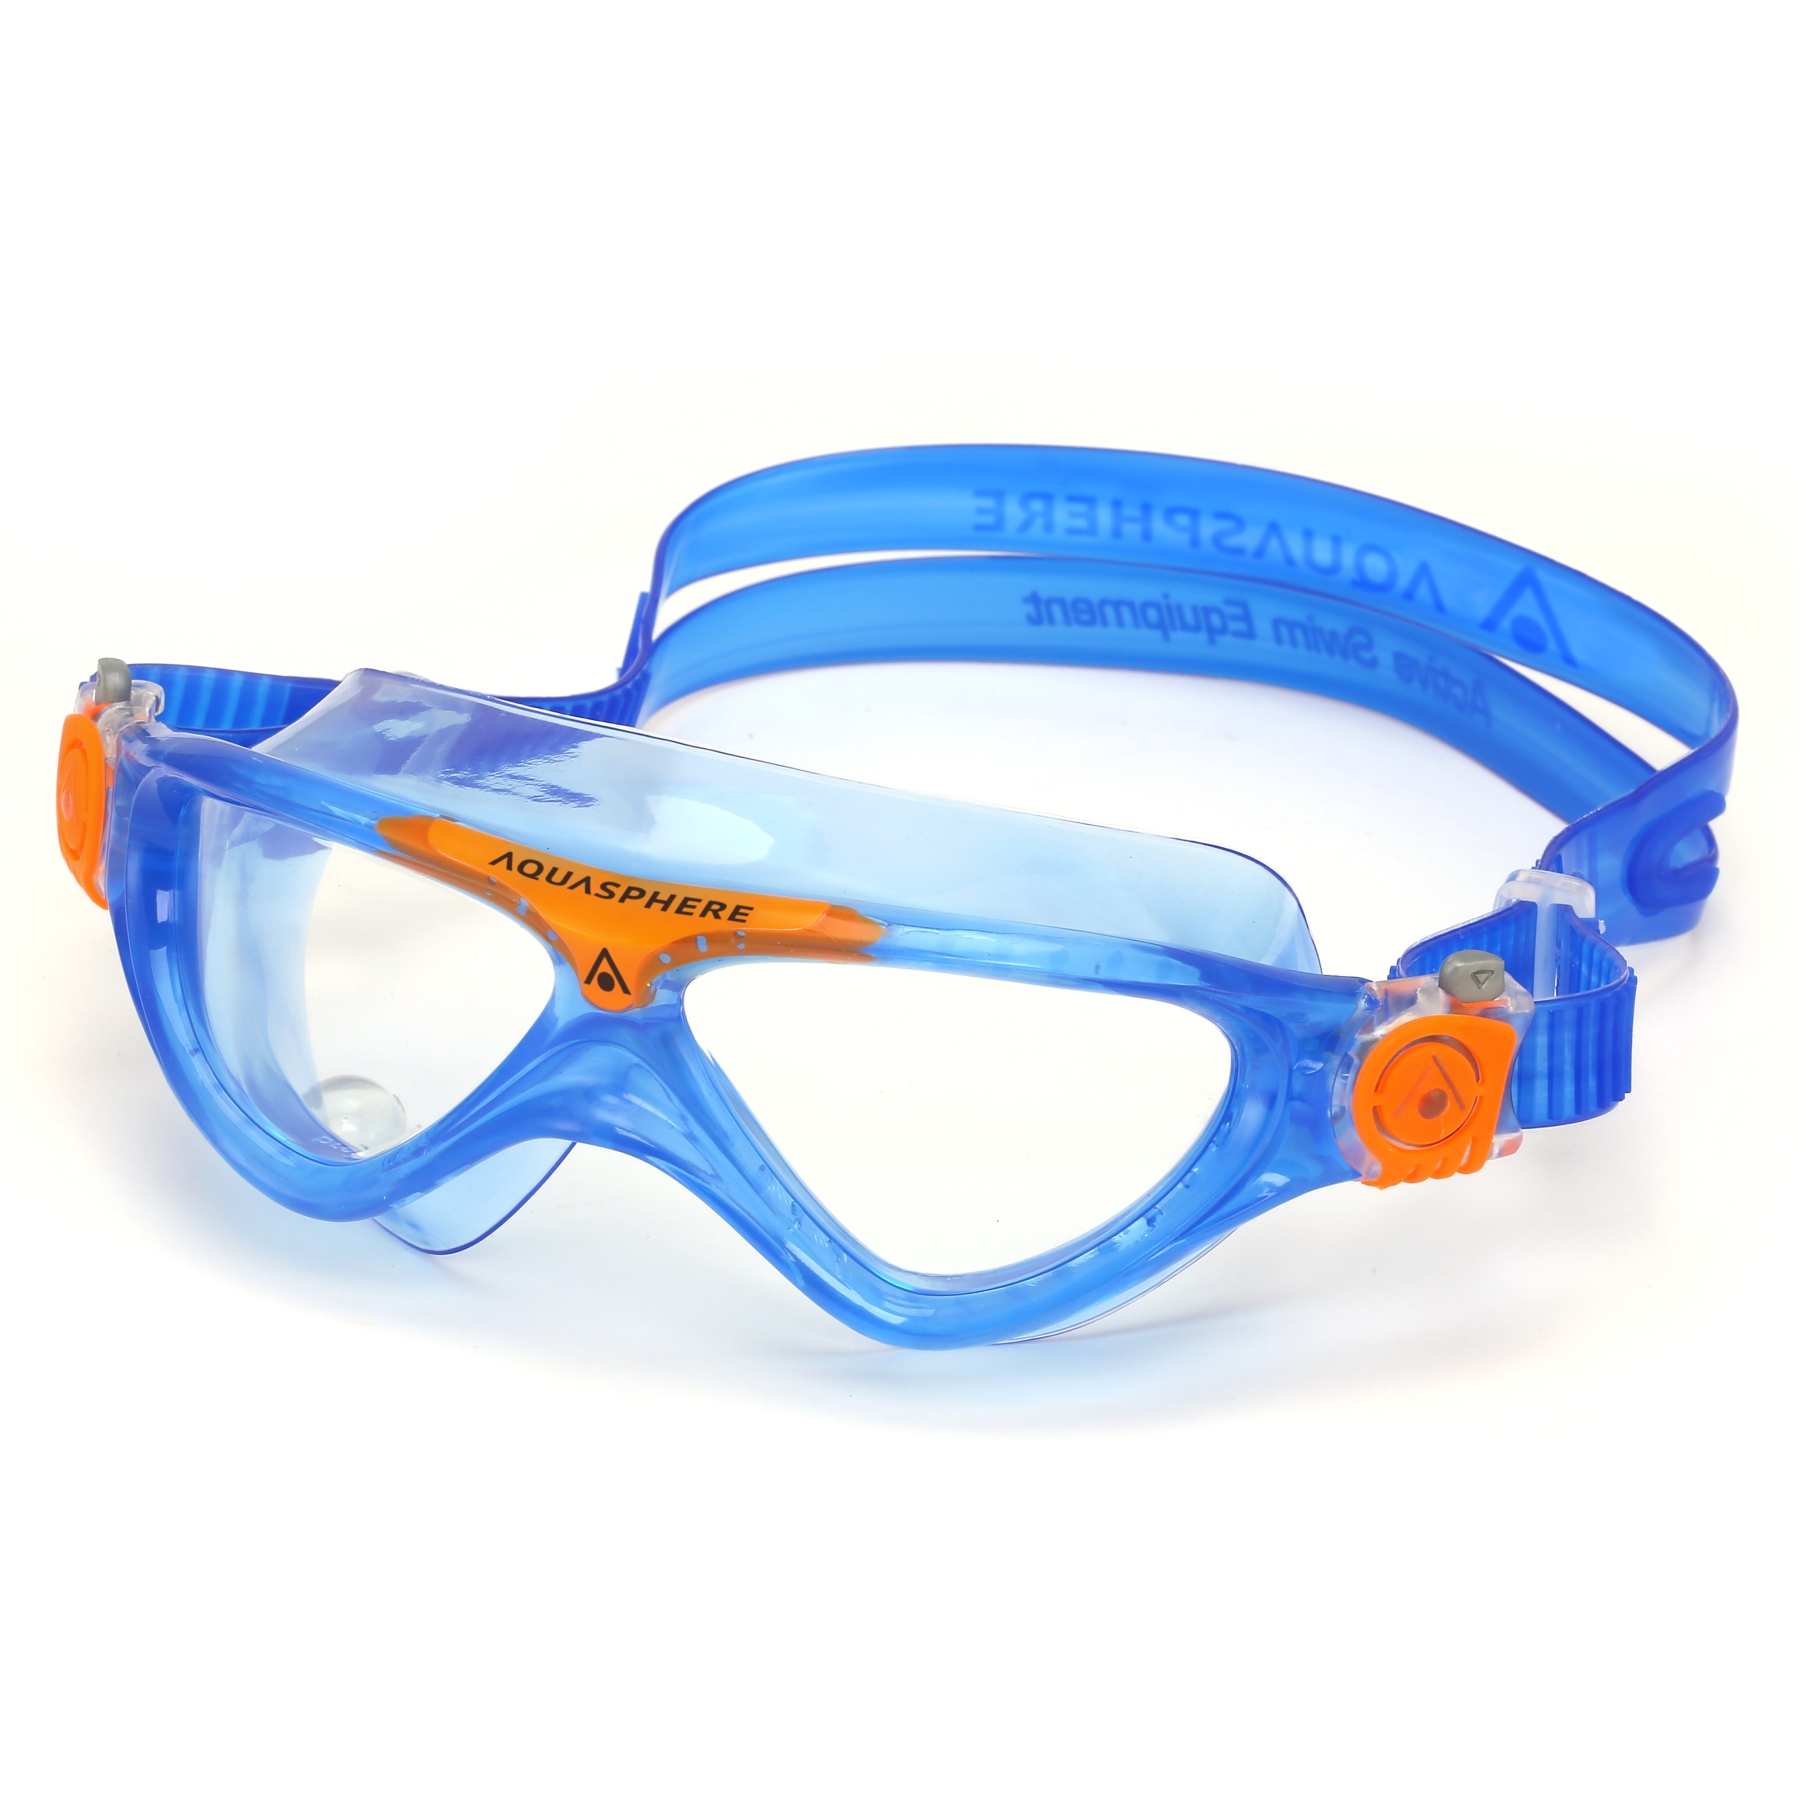 AQUASPHERE Gafas Natación Niños - Transparente - Vista Junior - Azul/Naranja